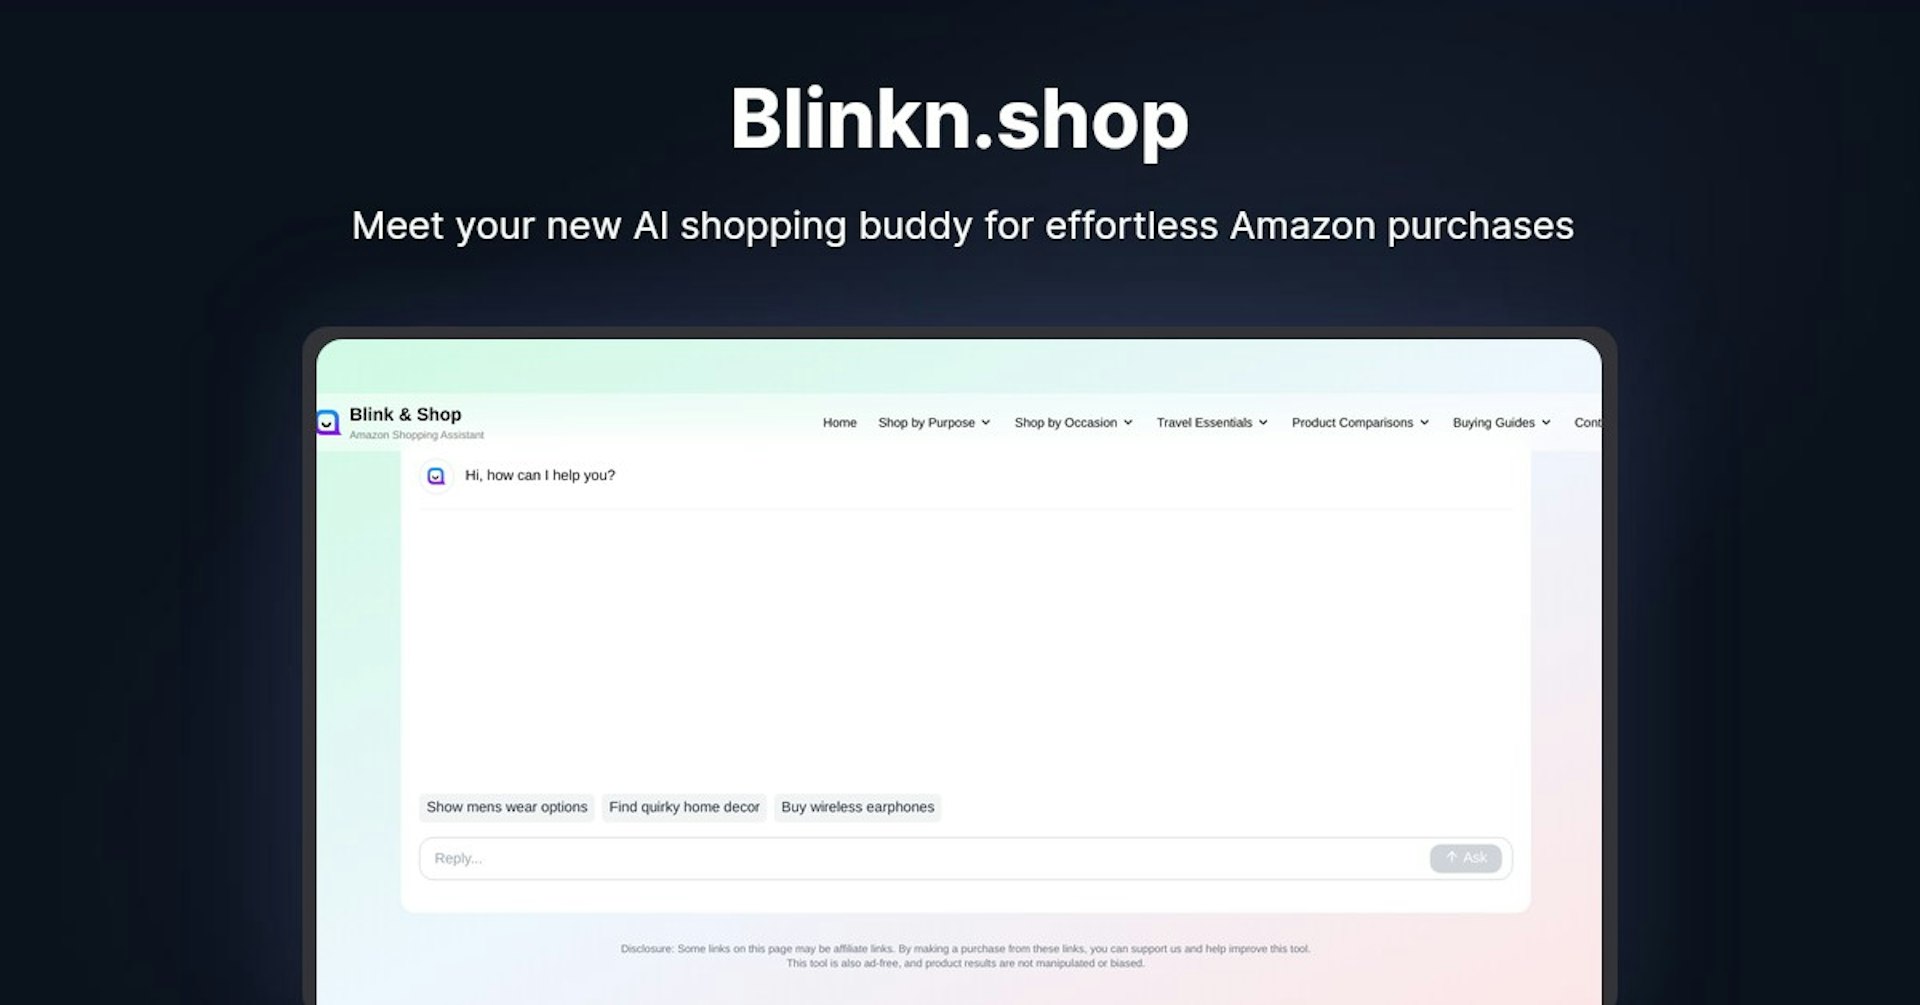 Blinkn.shop